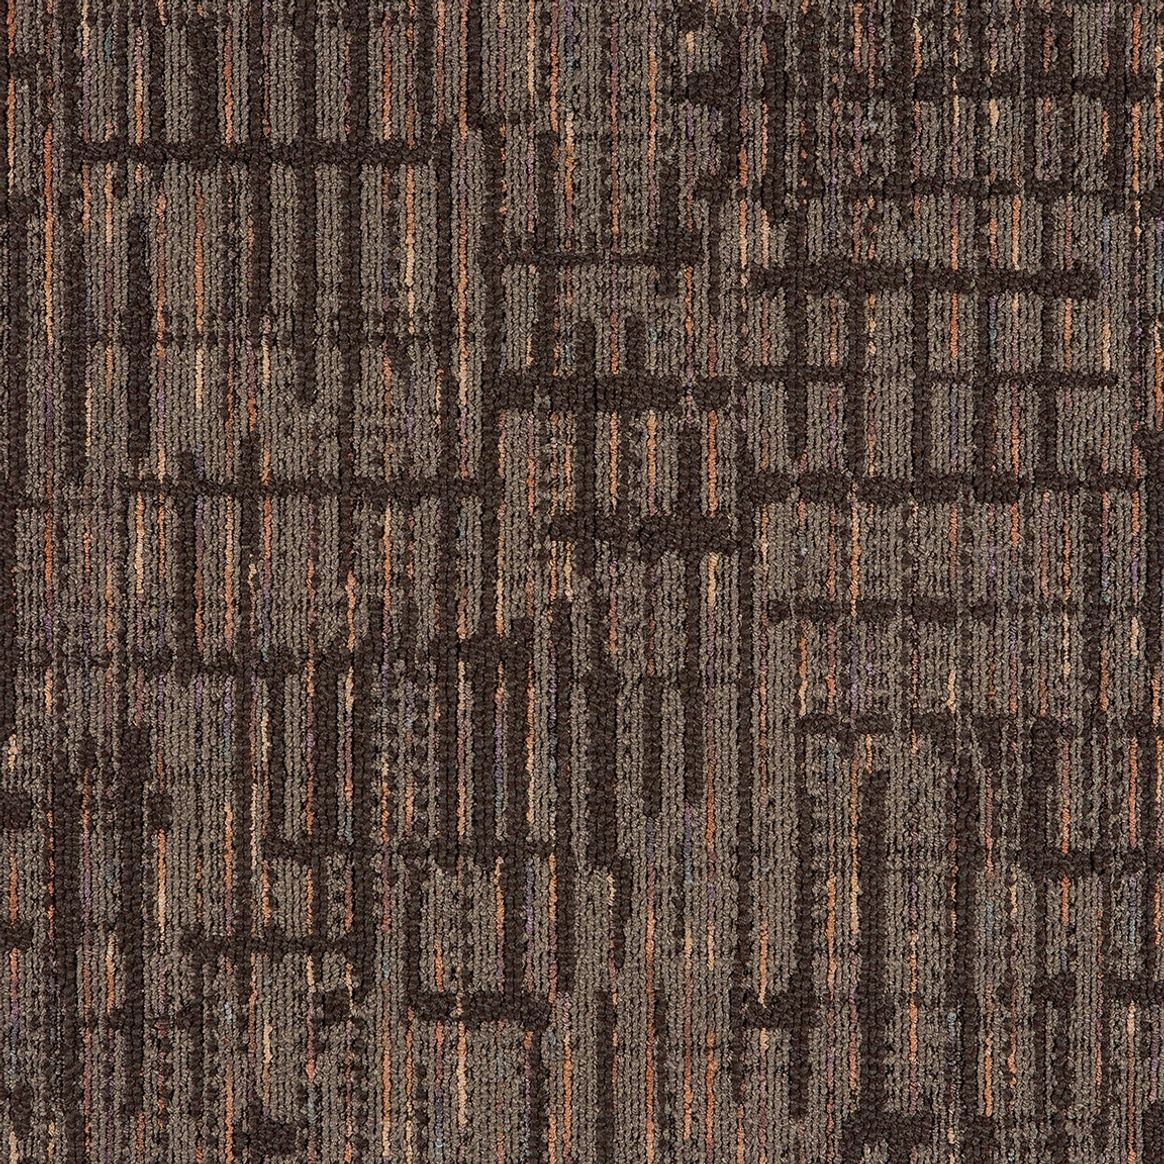 Mannington Commercial Align Carpet Tile Probability 24" x 24" Premium